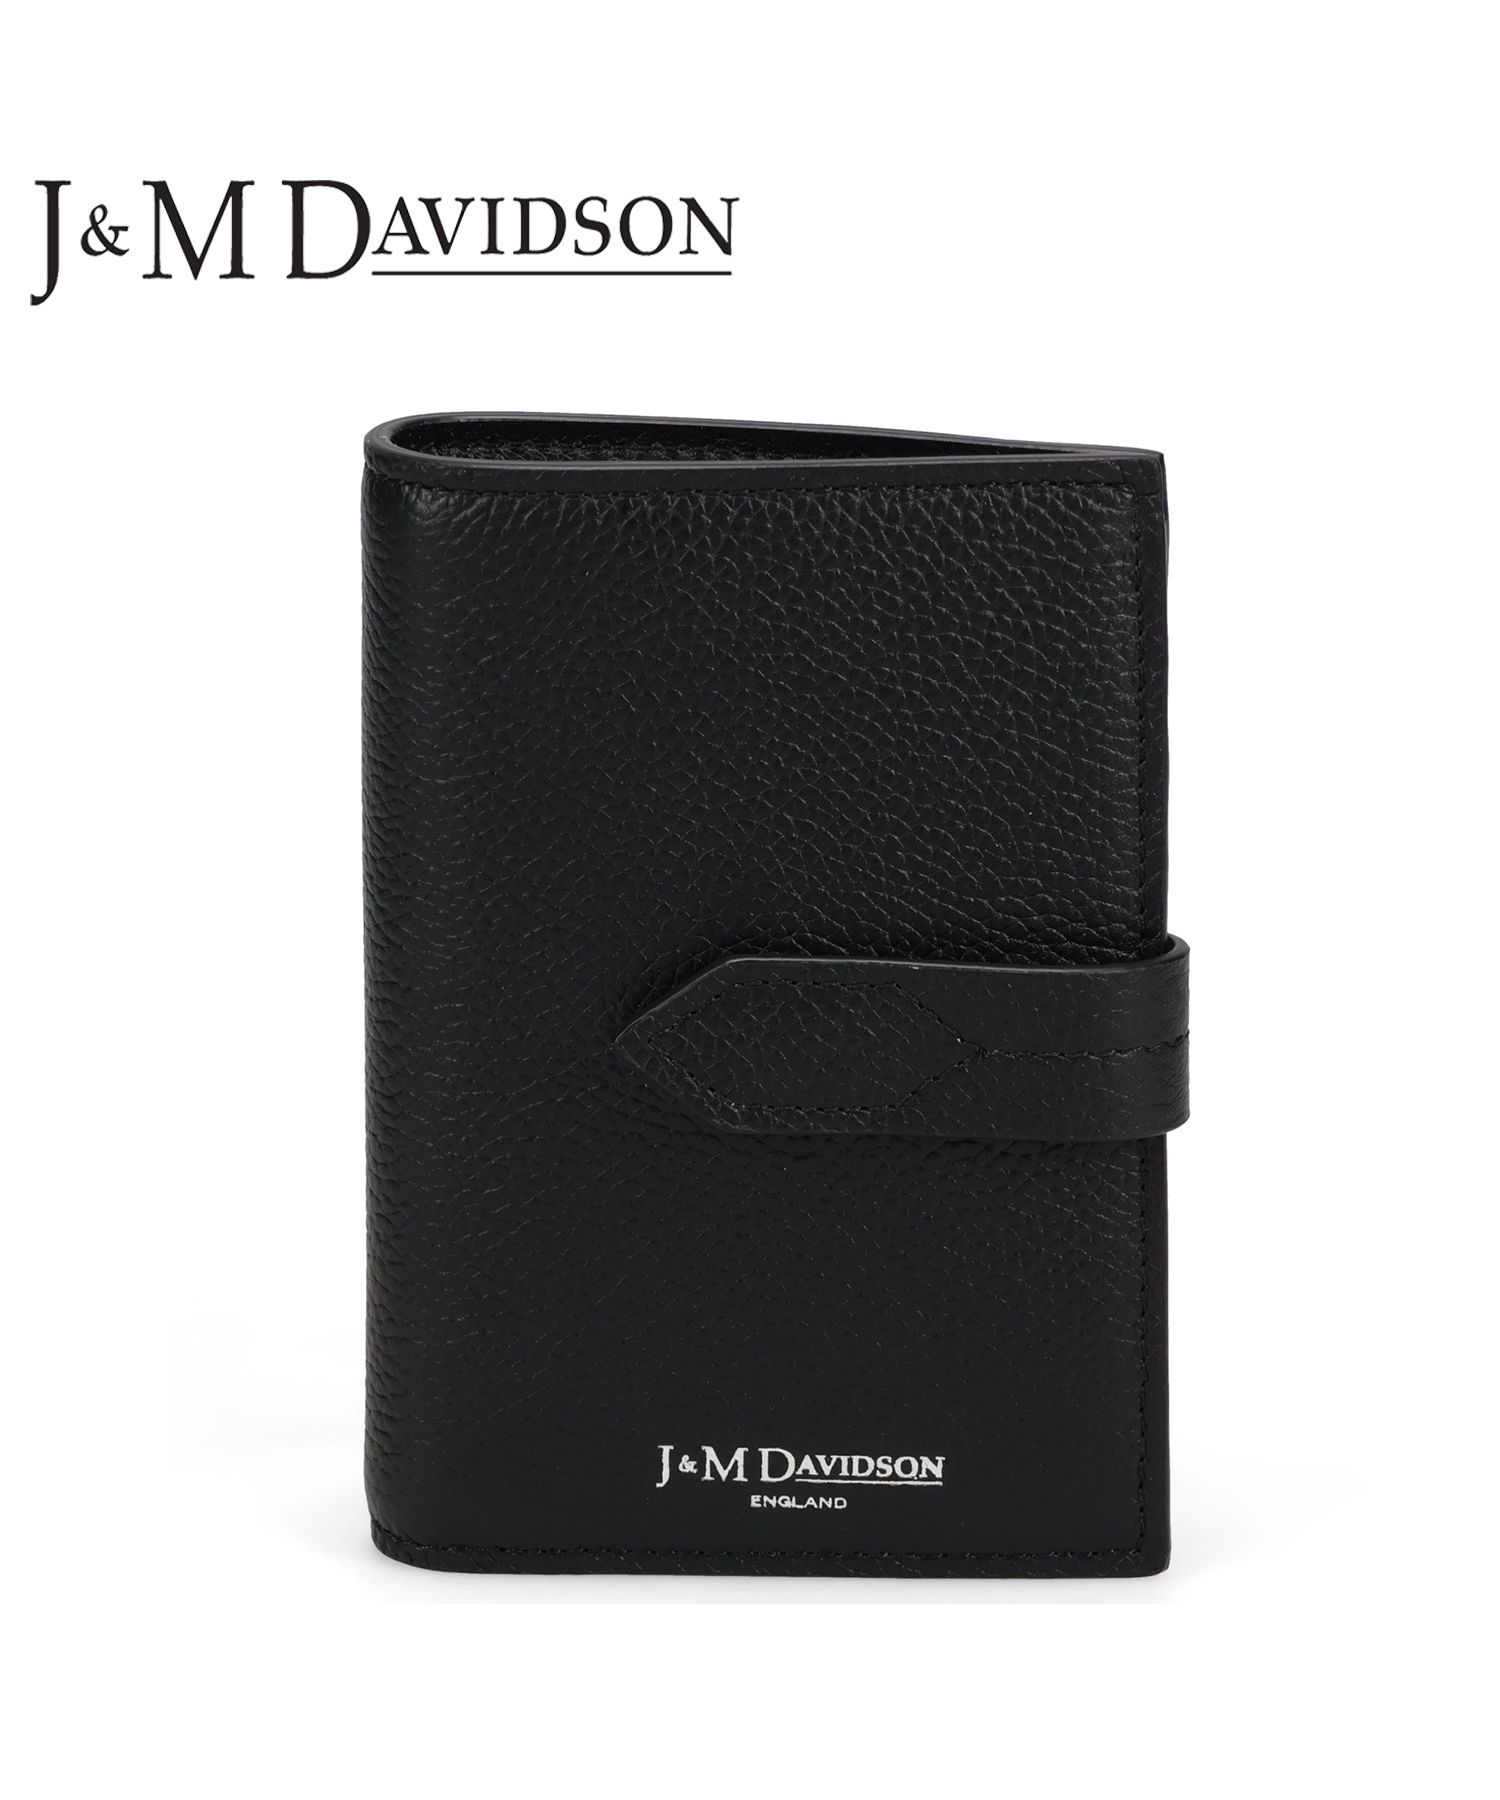 J&M DAVIDSON 財布 二つ折り ウォレット www.krzysztofbialy.com